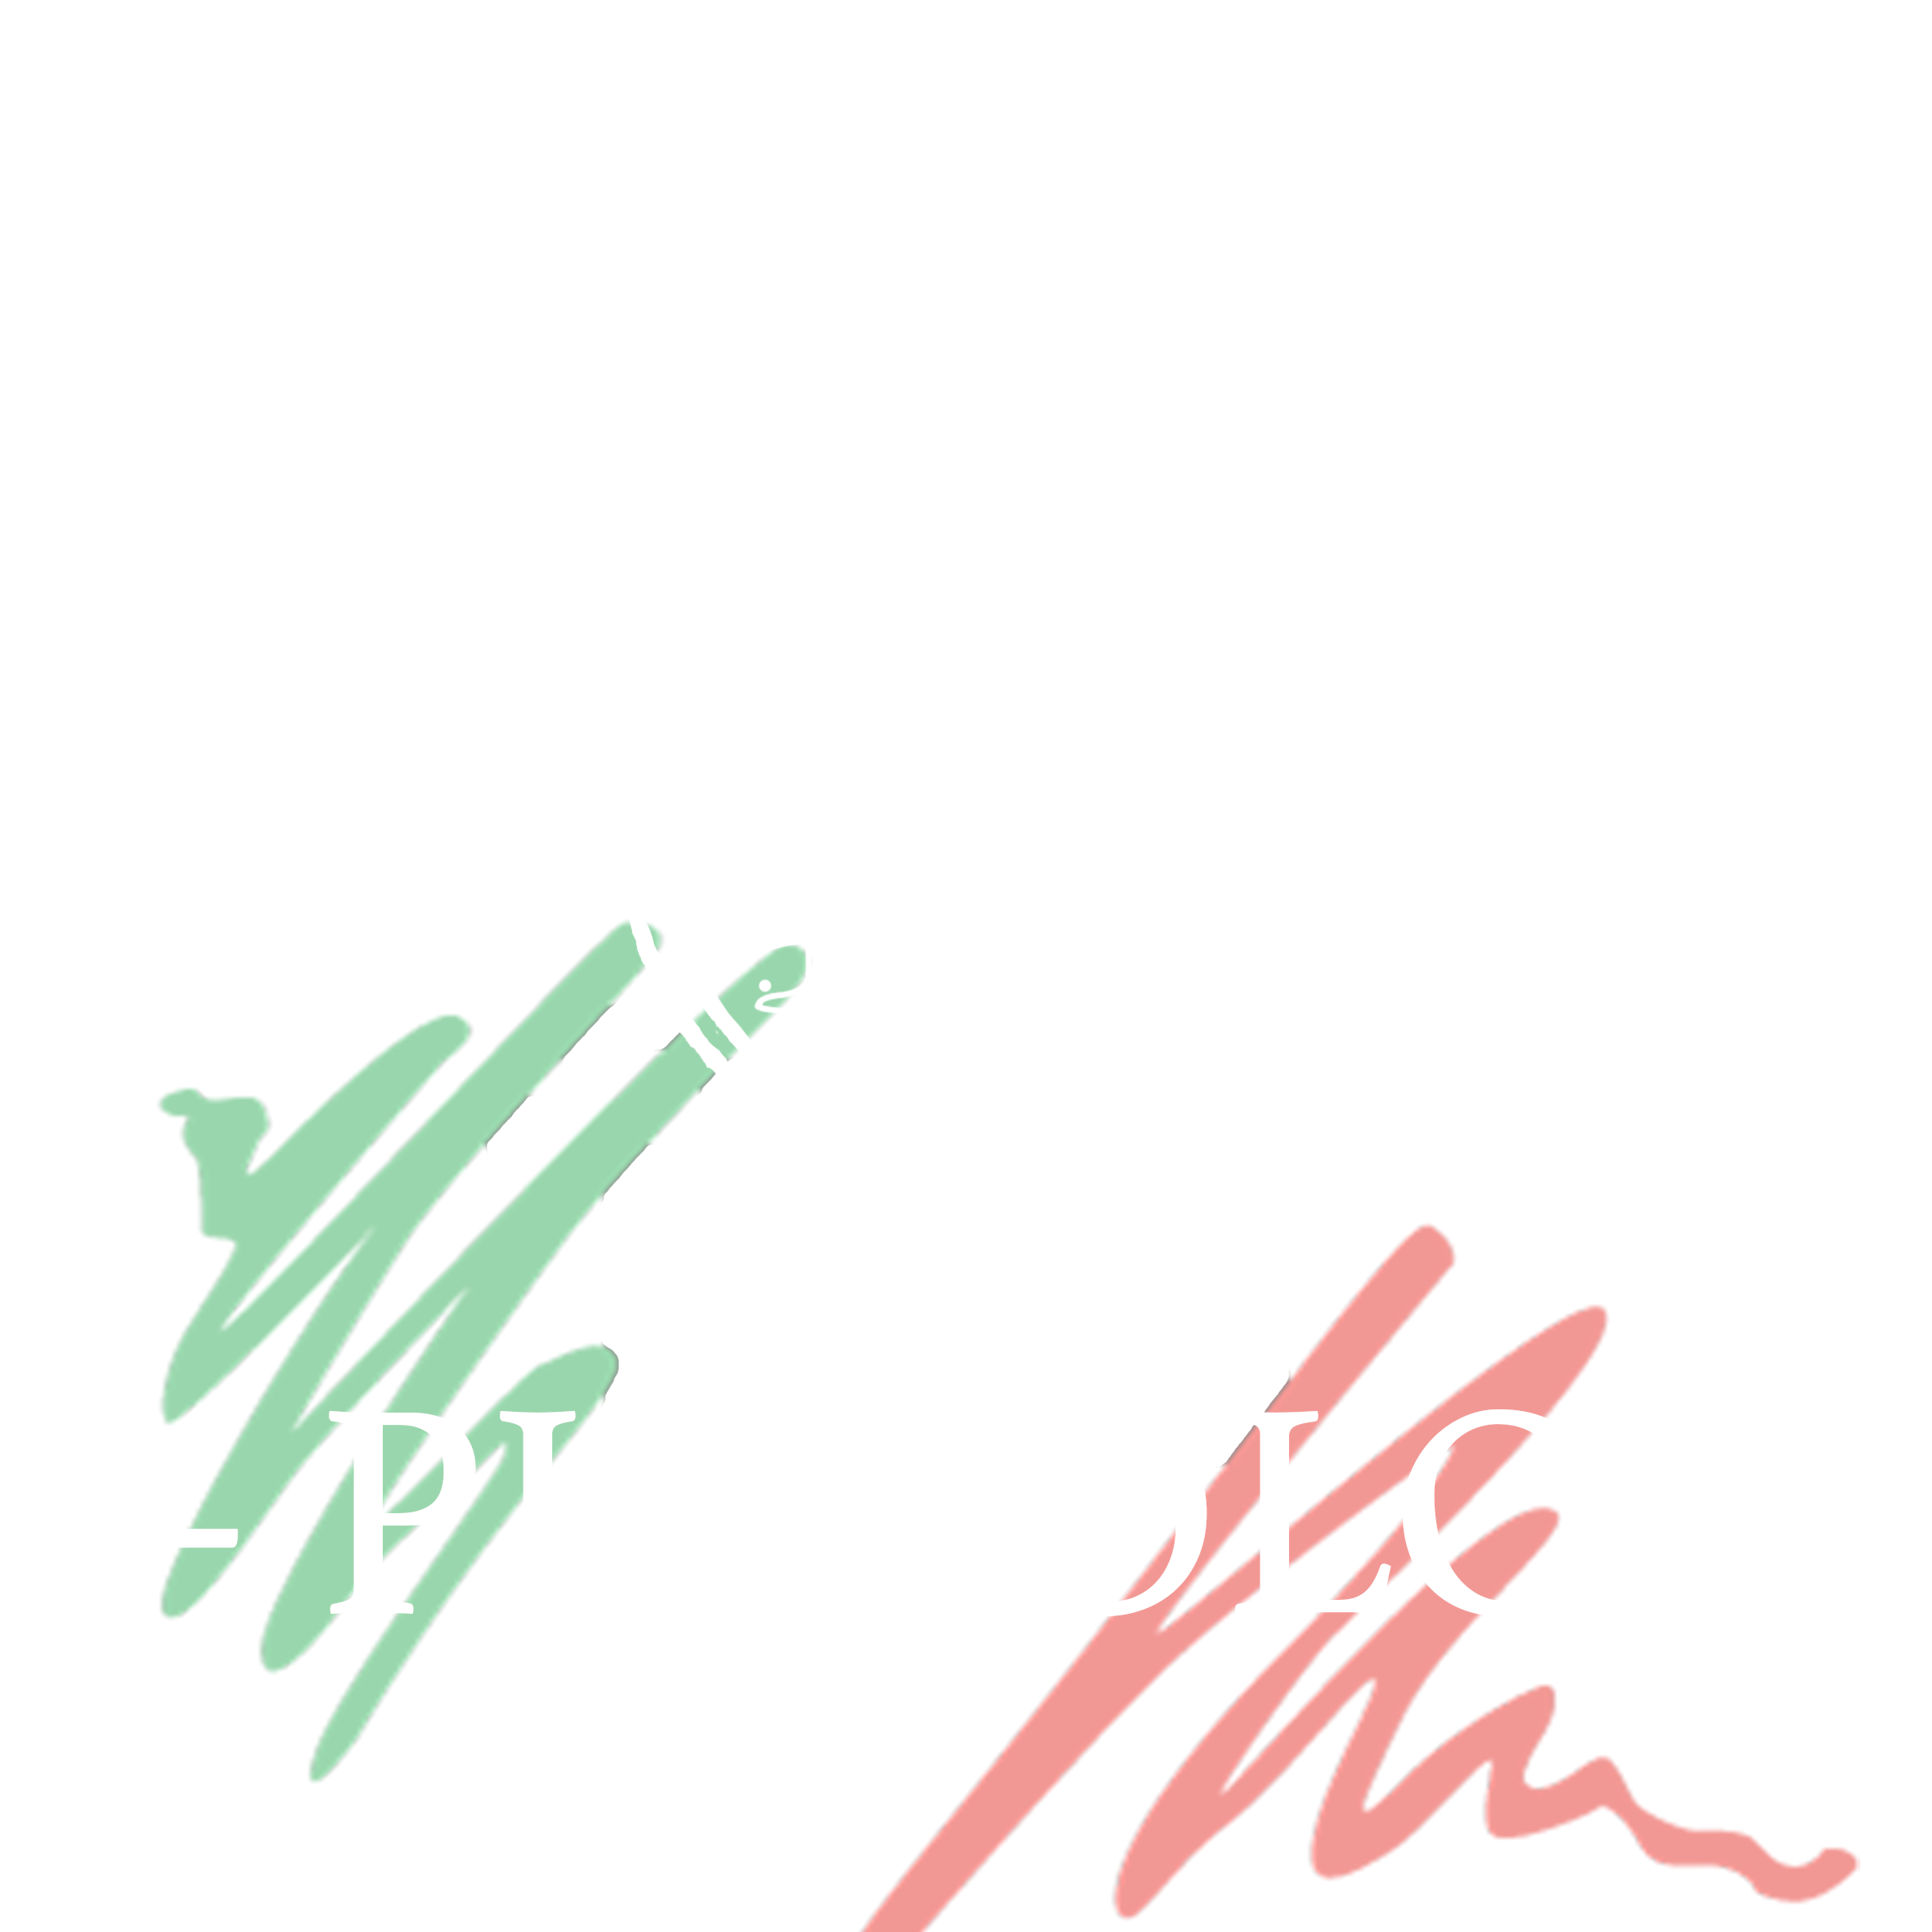 Caffe Piccolo